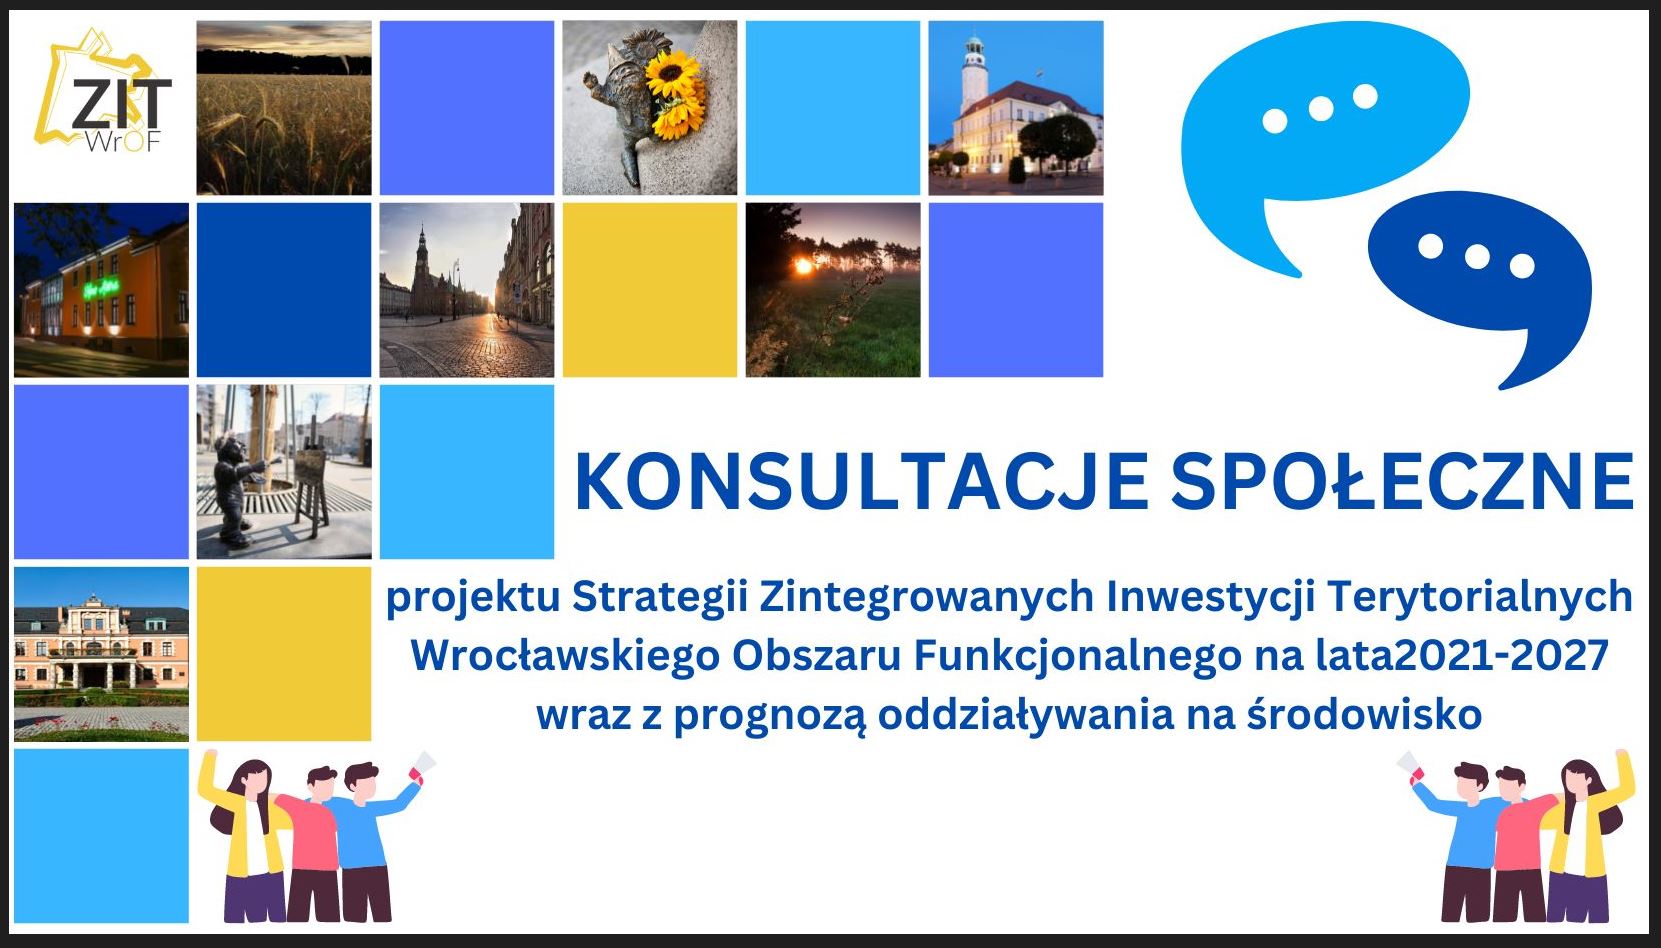 Konsultacje społeczne projektu Strategii Zintegrowanych Inwestycji Terytorialnych Wrocławskiego Obszaru Funkcjonalnego 2021-2027 wraz z prognozą oddziaływania na środowisko